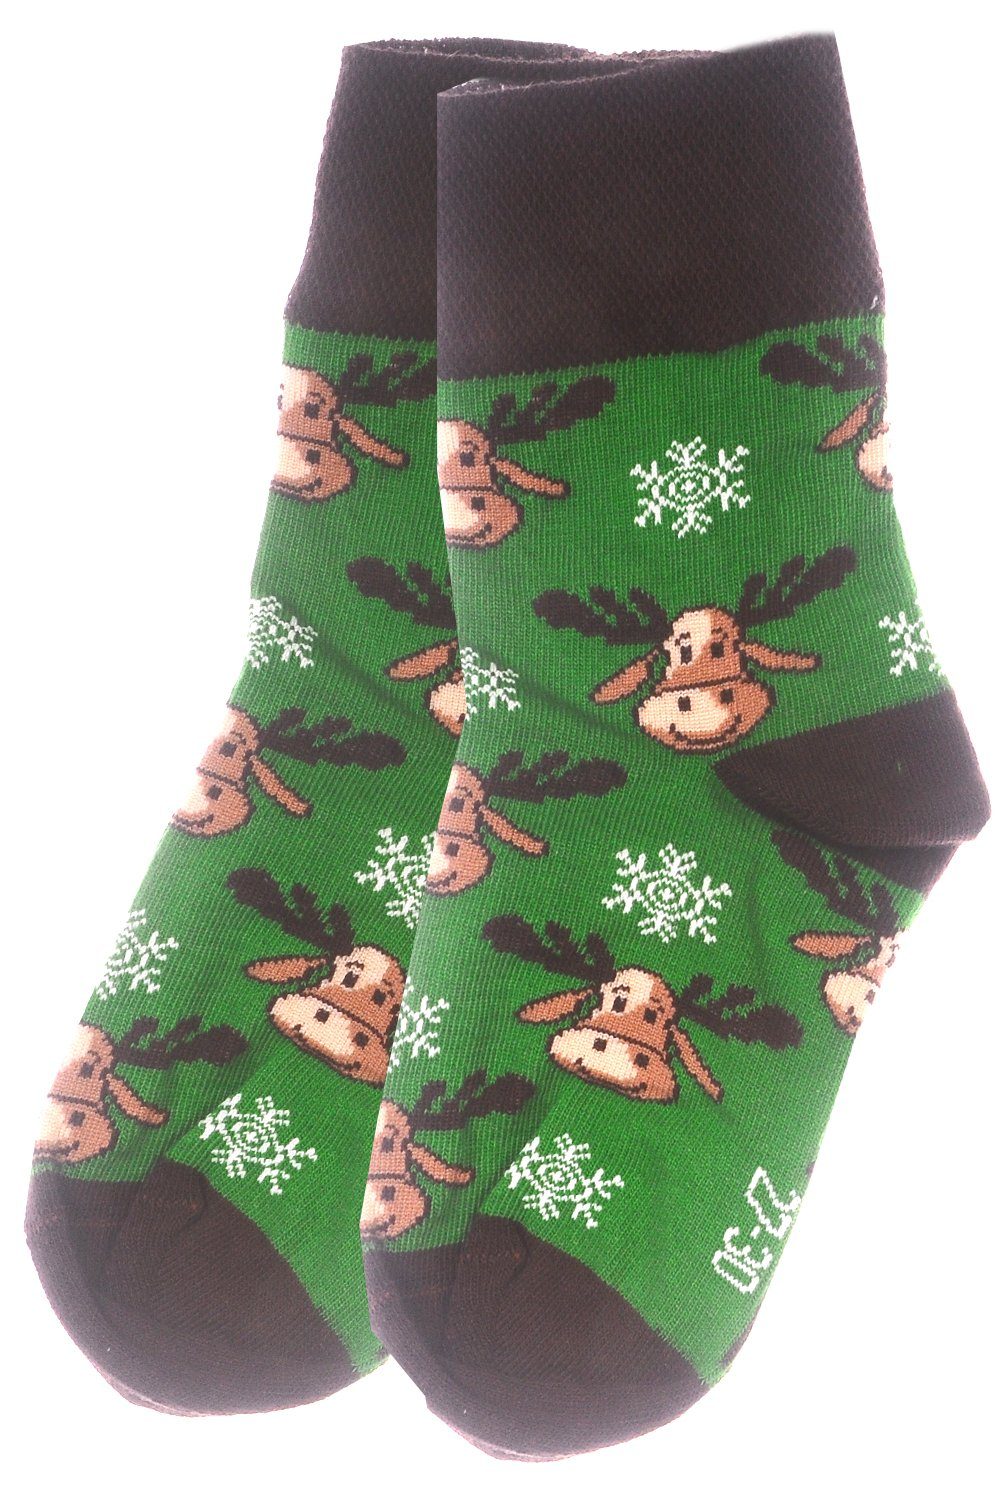 Martinex Socken 1 Paar Socken Strümpfe 27 31 35 38 39 42 43 46 Weihnachtssocken für die ganze Familie | Wintersocken